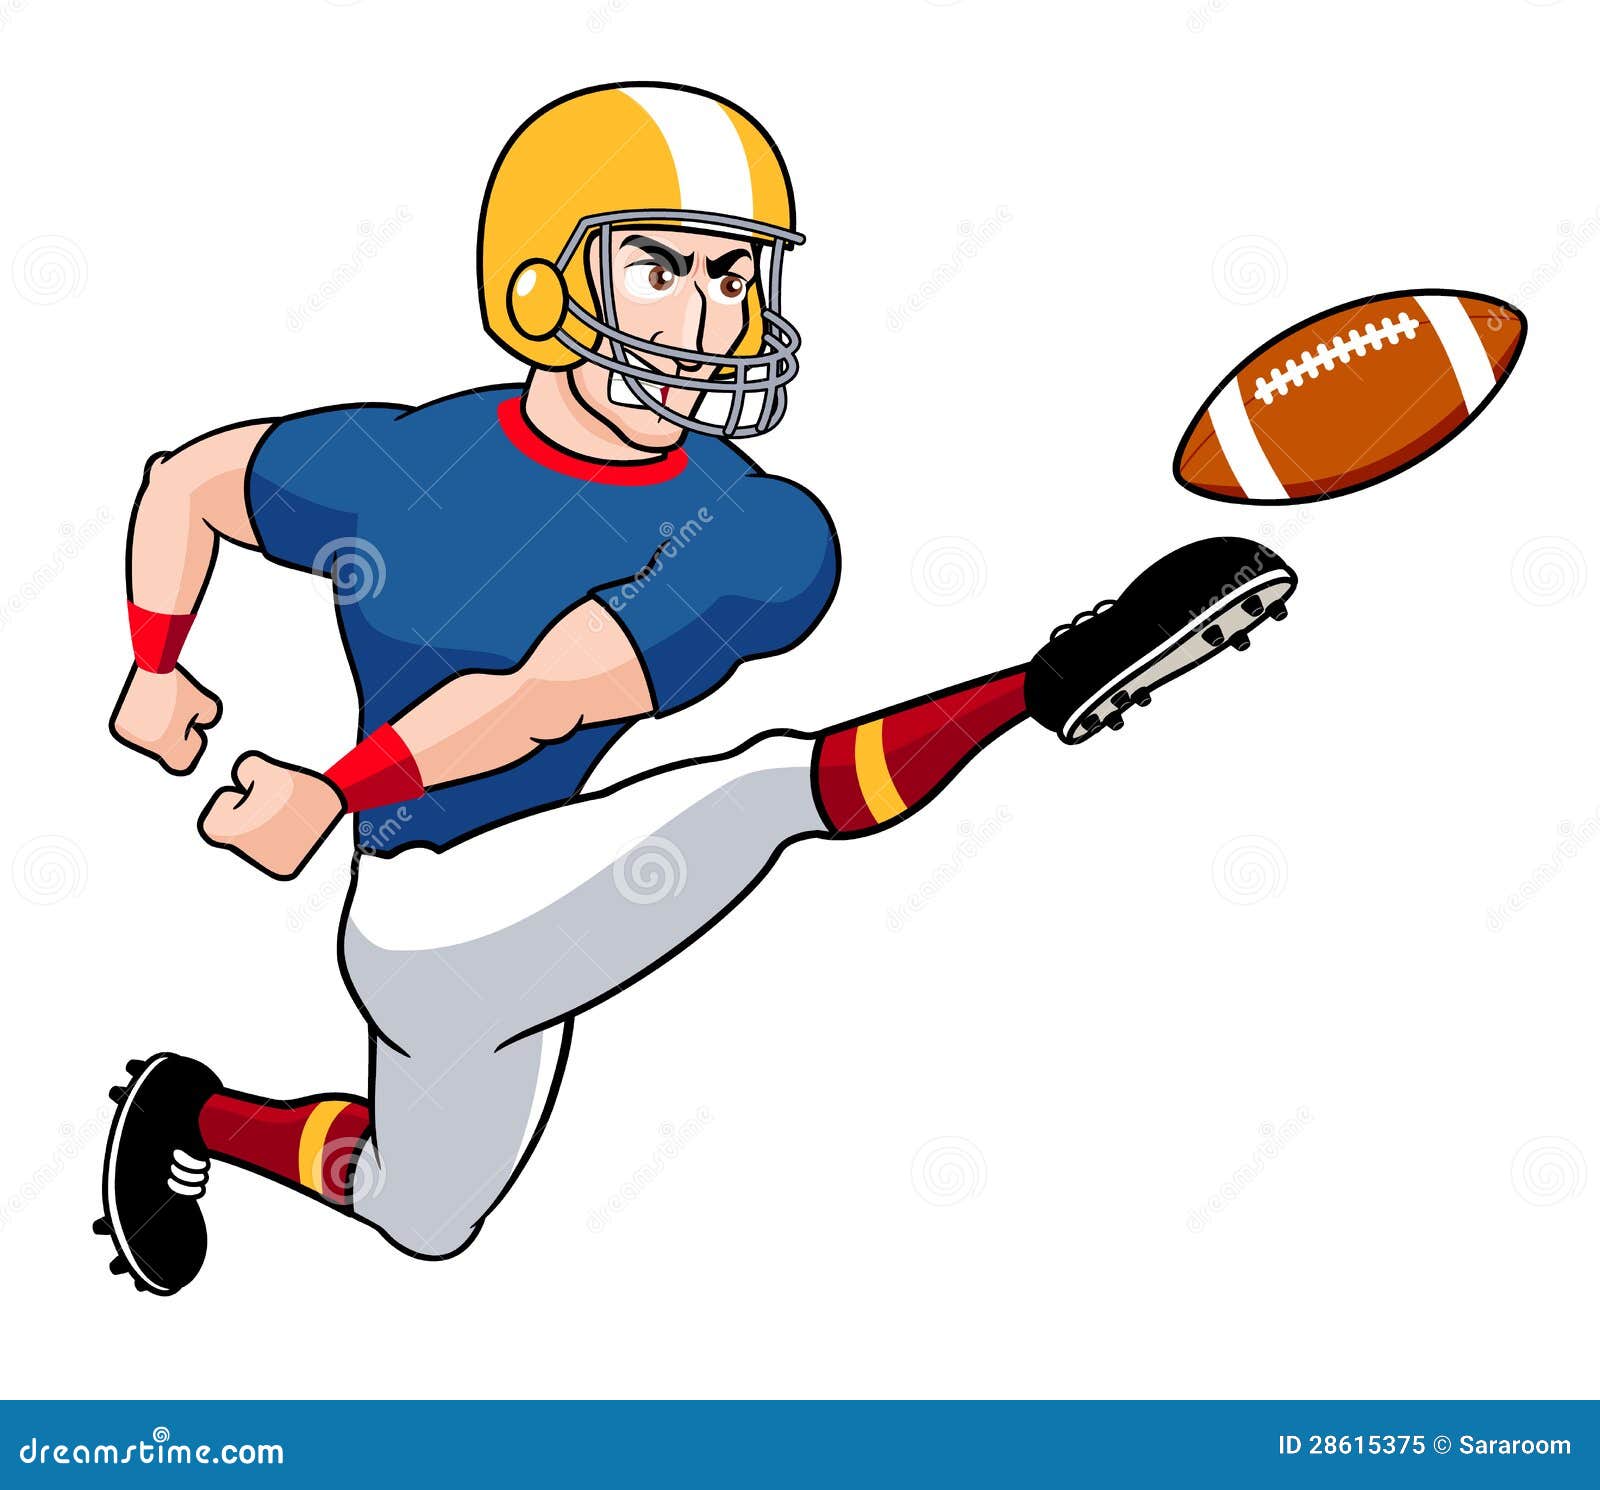 Cartoon American Football Player Steady Throw On The Field Vector